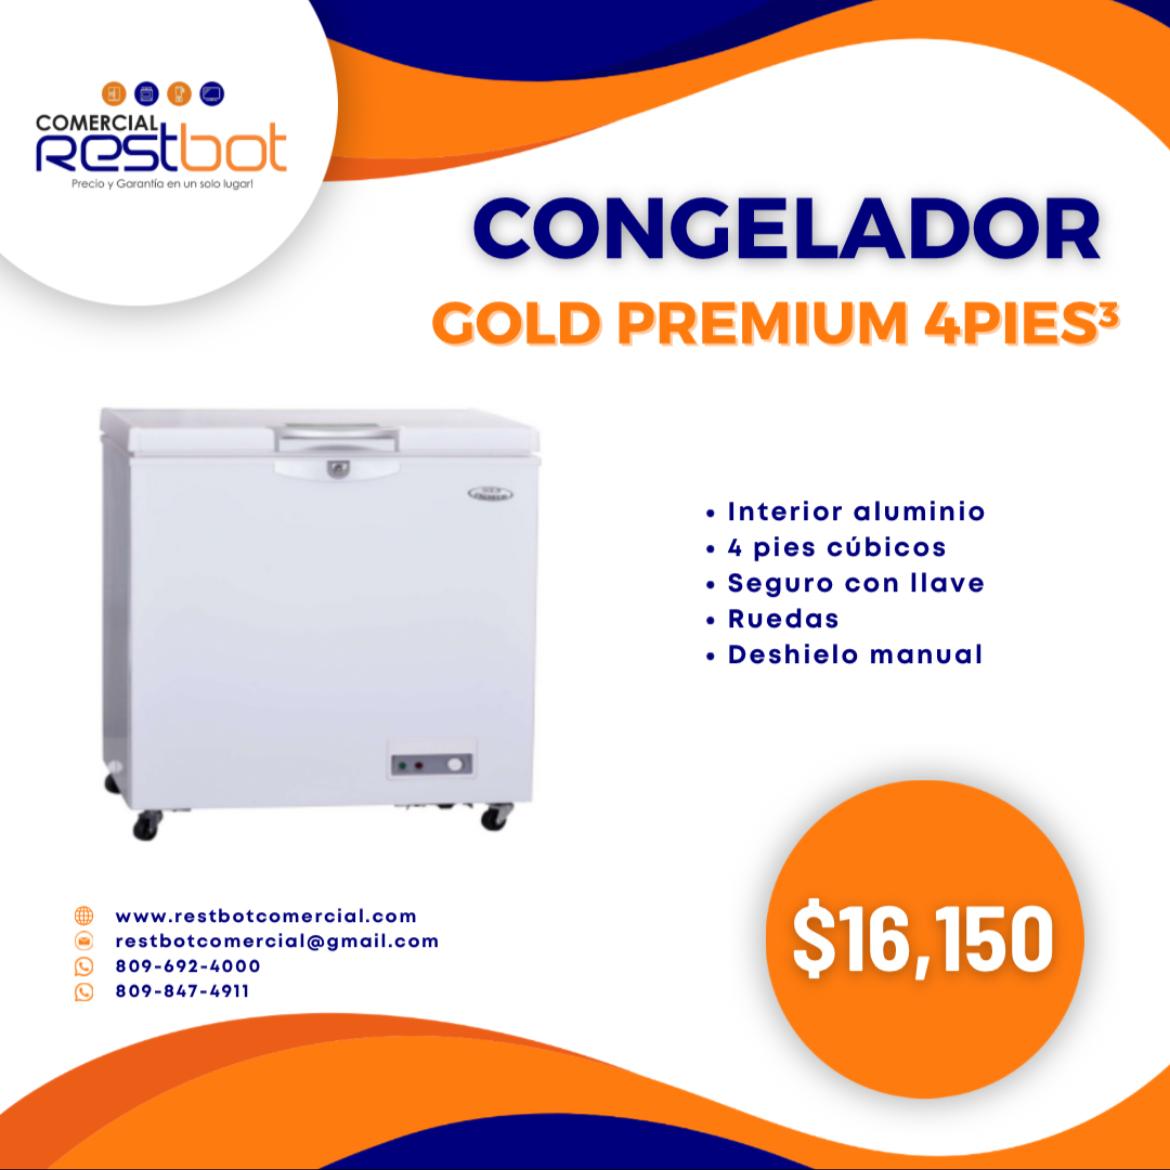 Congelador Gold Premium 4 pies Foto 7185575-1.jpg